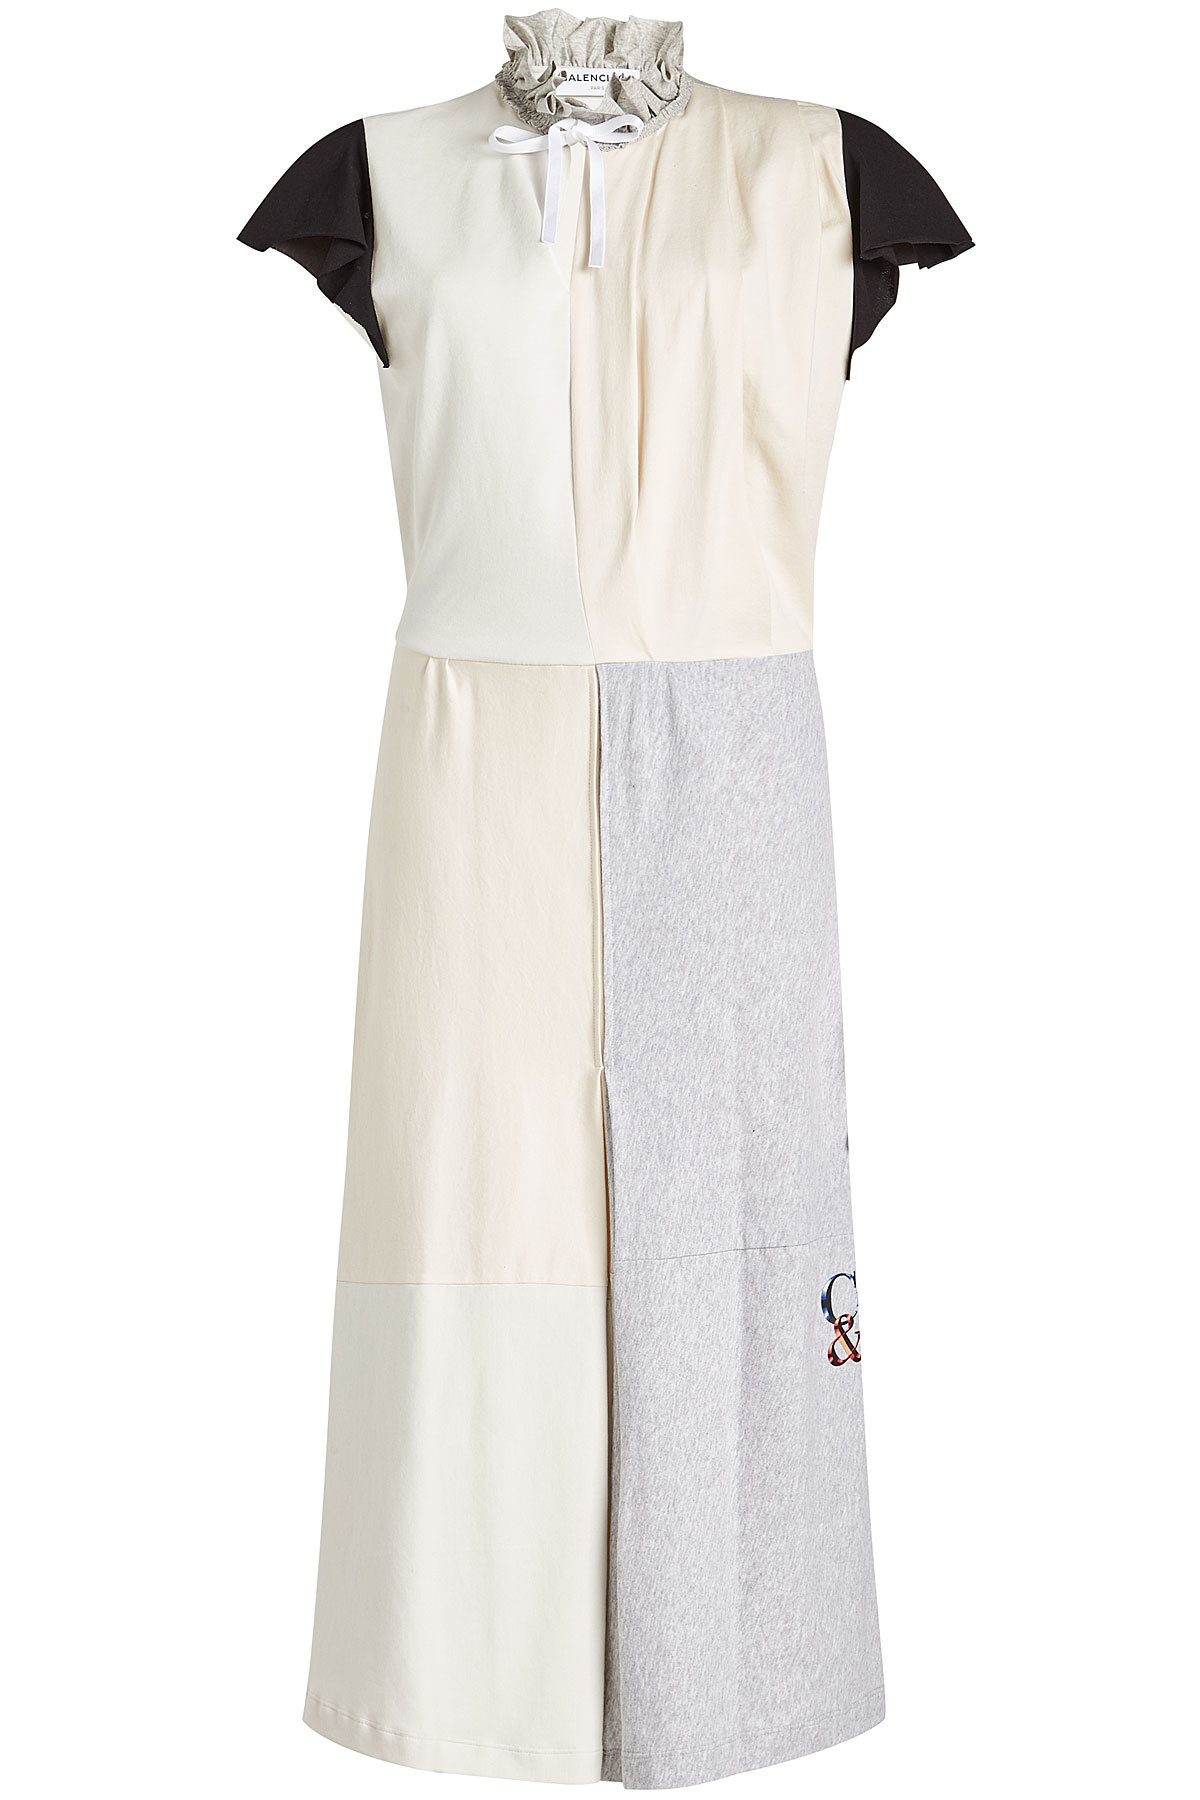 Balenciaga - Capped Sleeve Jersey Dress